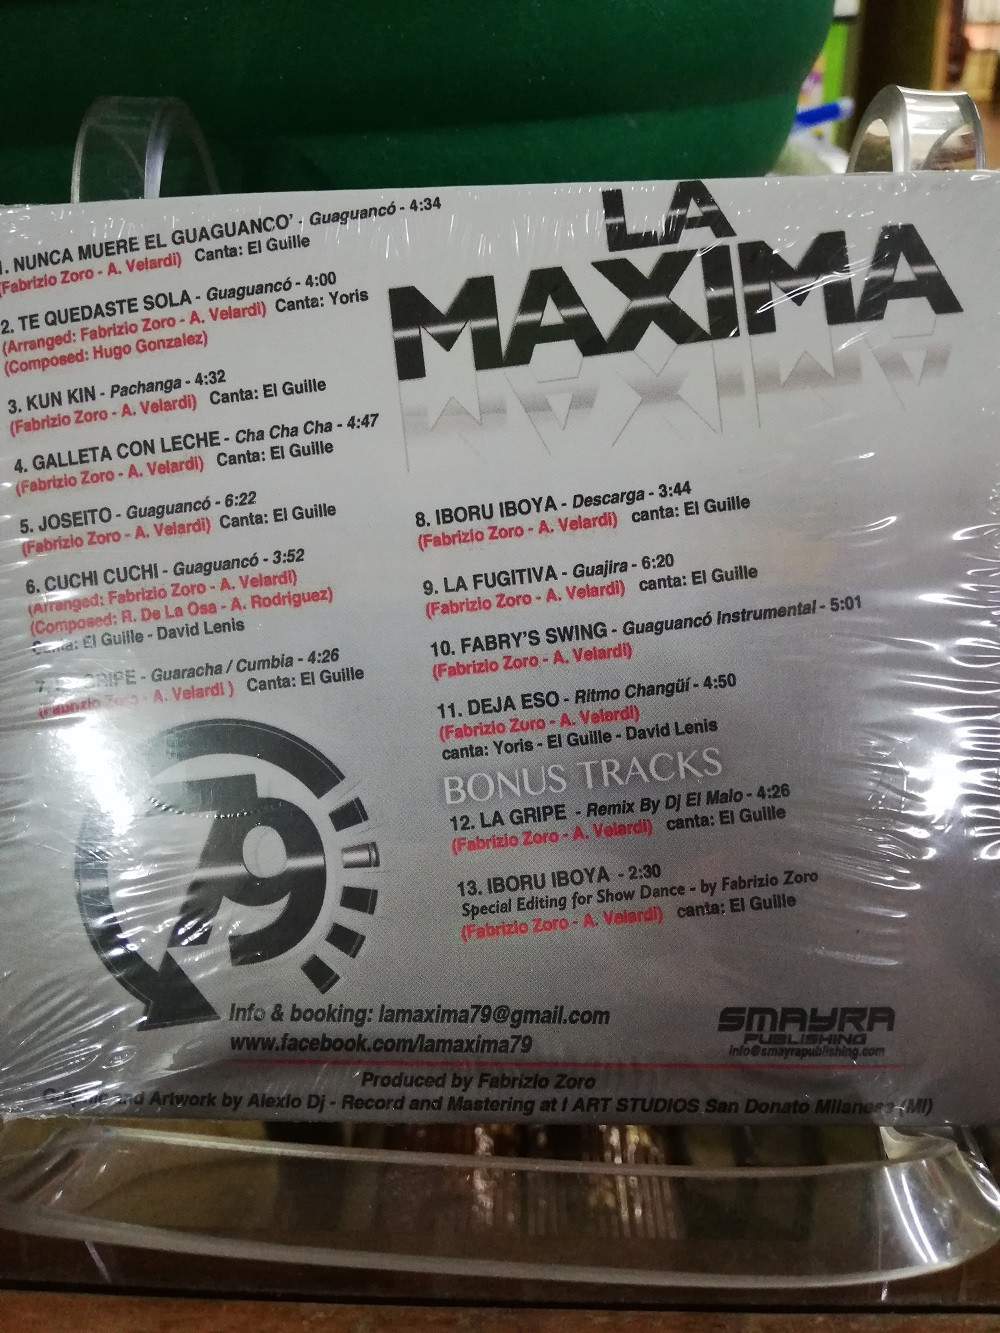 Imagen CD LA MÁXIMA 79 - JOSEITO 2